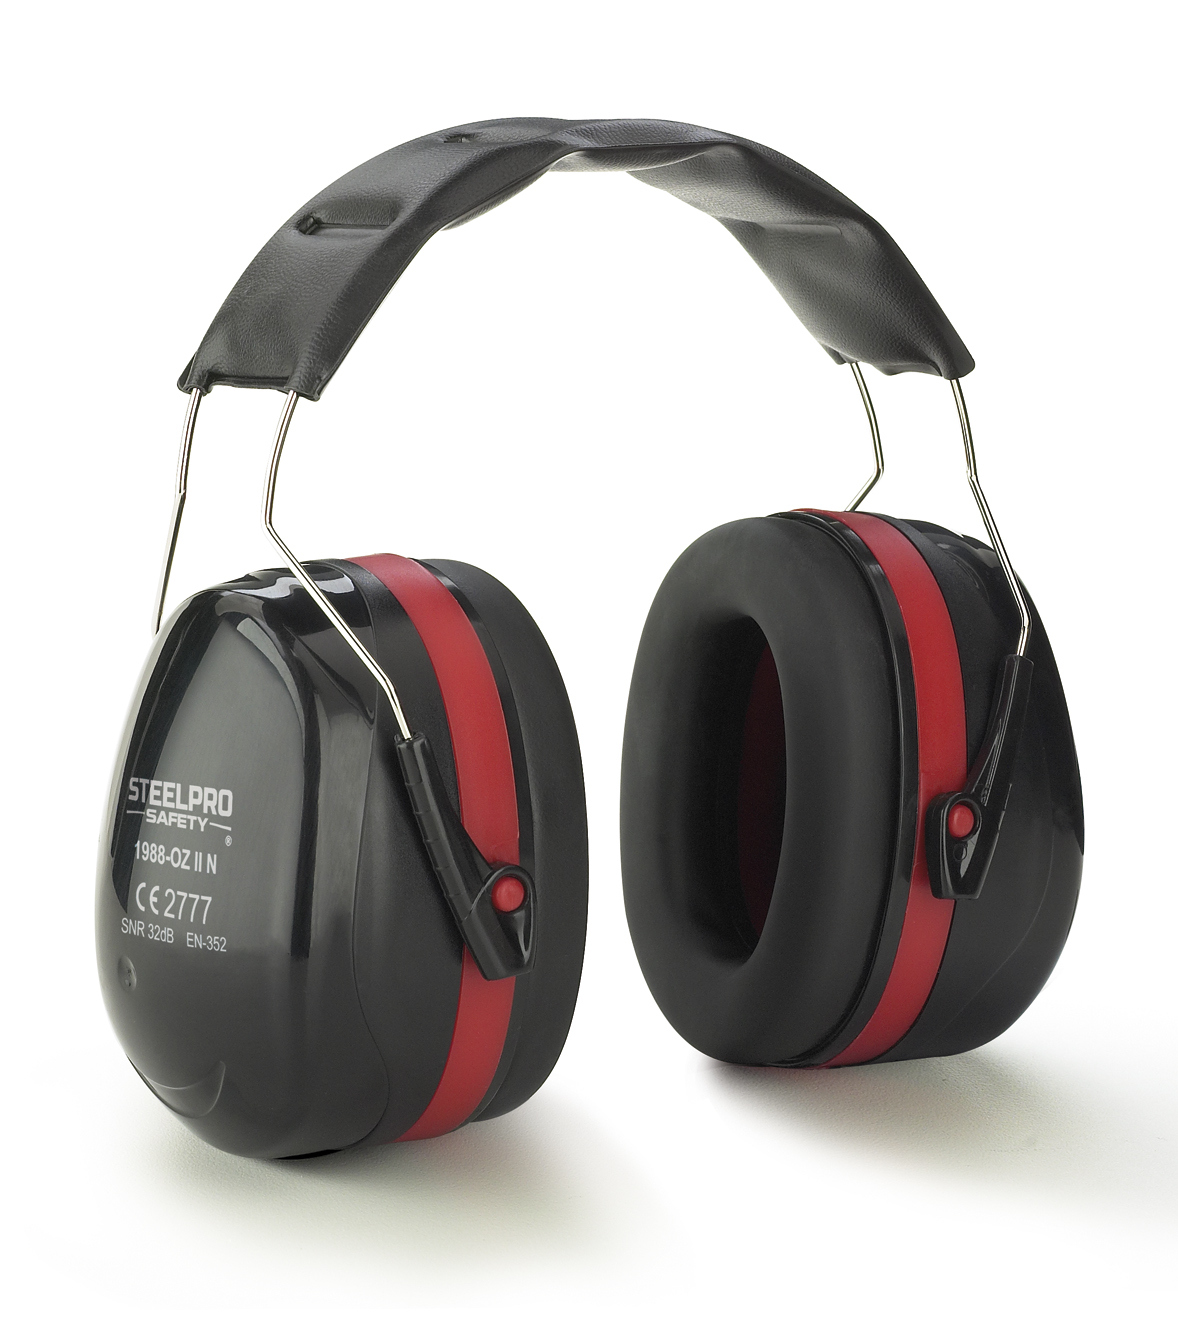 1988-OZ II N Proteção Auditiva Orelheiras Protetor auricular STEELPRO® ZEN Black series para proteção auditiva com alta atenuação.